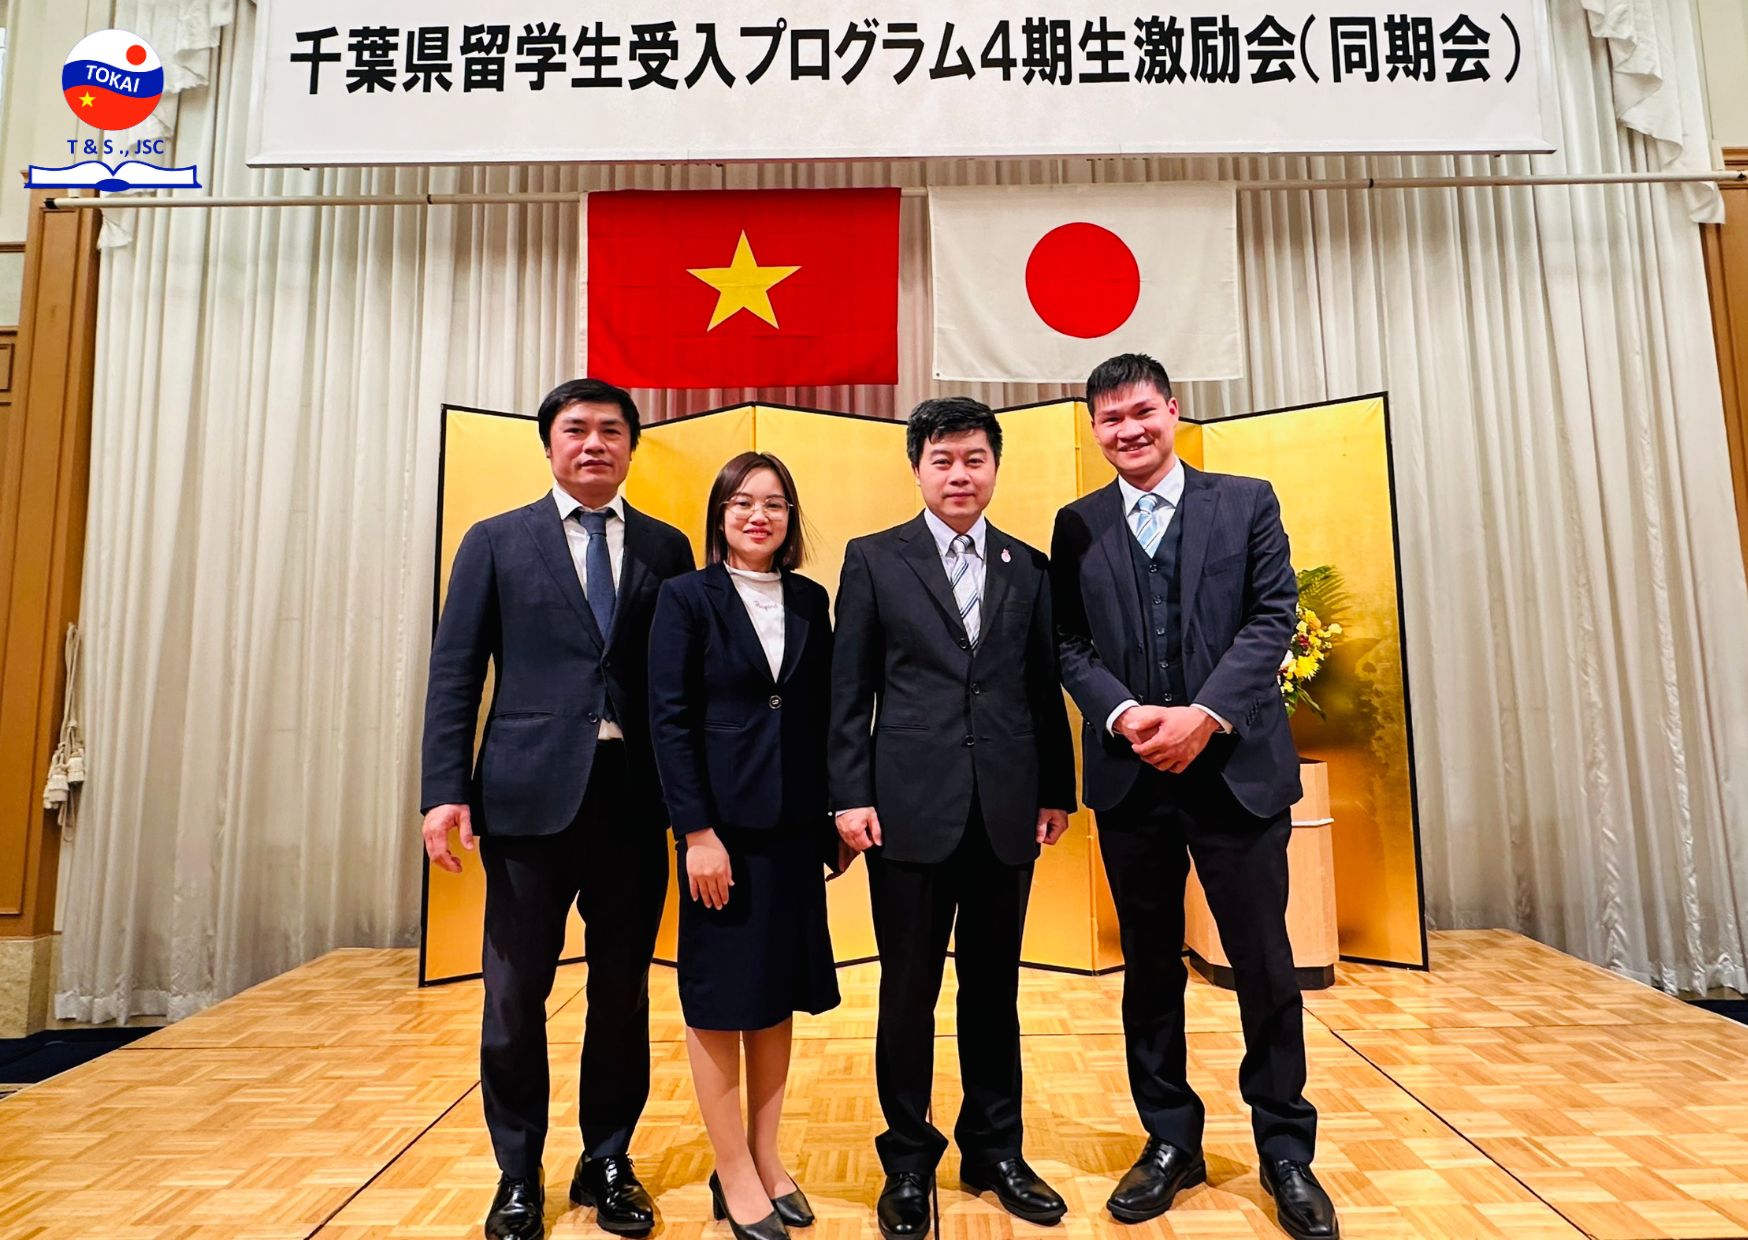 Cơ hội du học điều dưỡng Nhật Bản với học bổng Chiba cùng Tokai Việt Nhật - 2